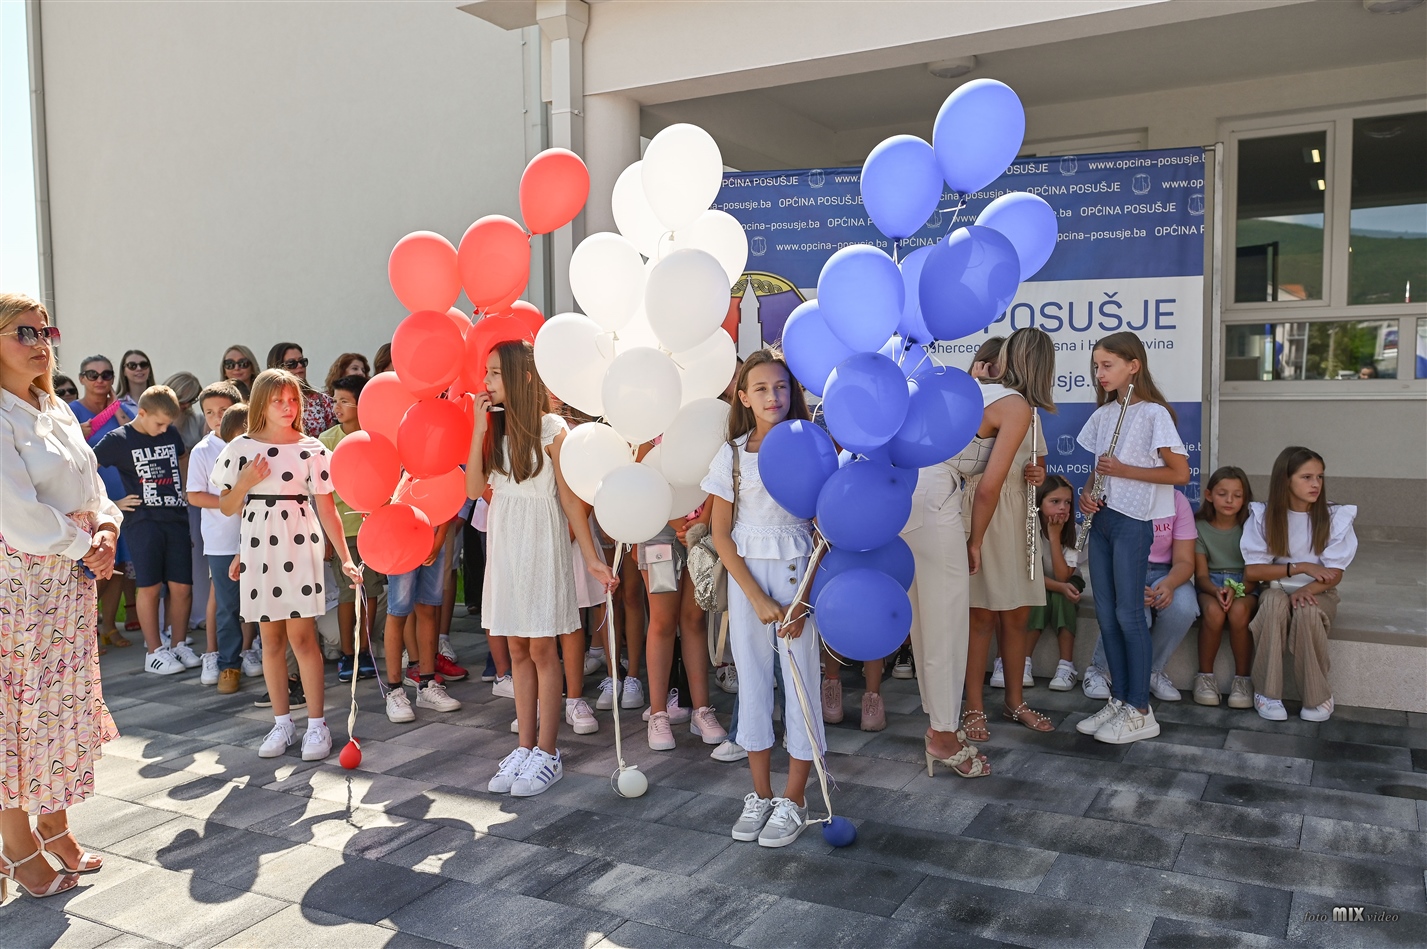 projekt desetljeća: u posušju svečano otvorena nova osnovna škola